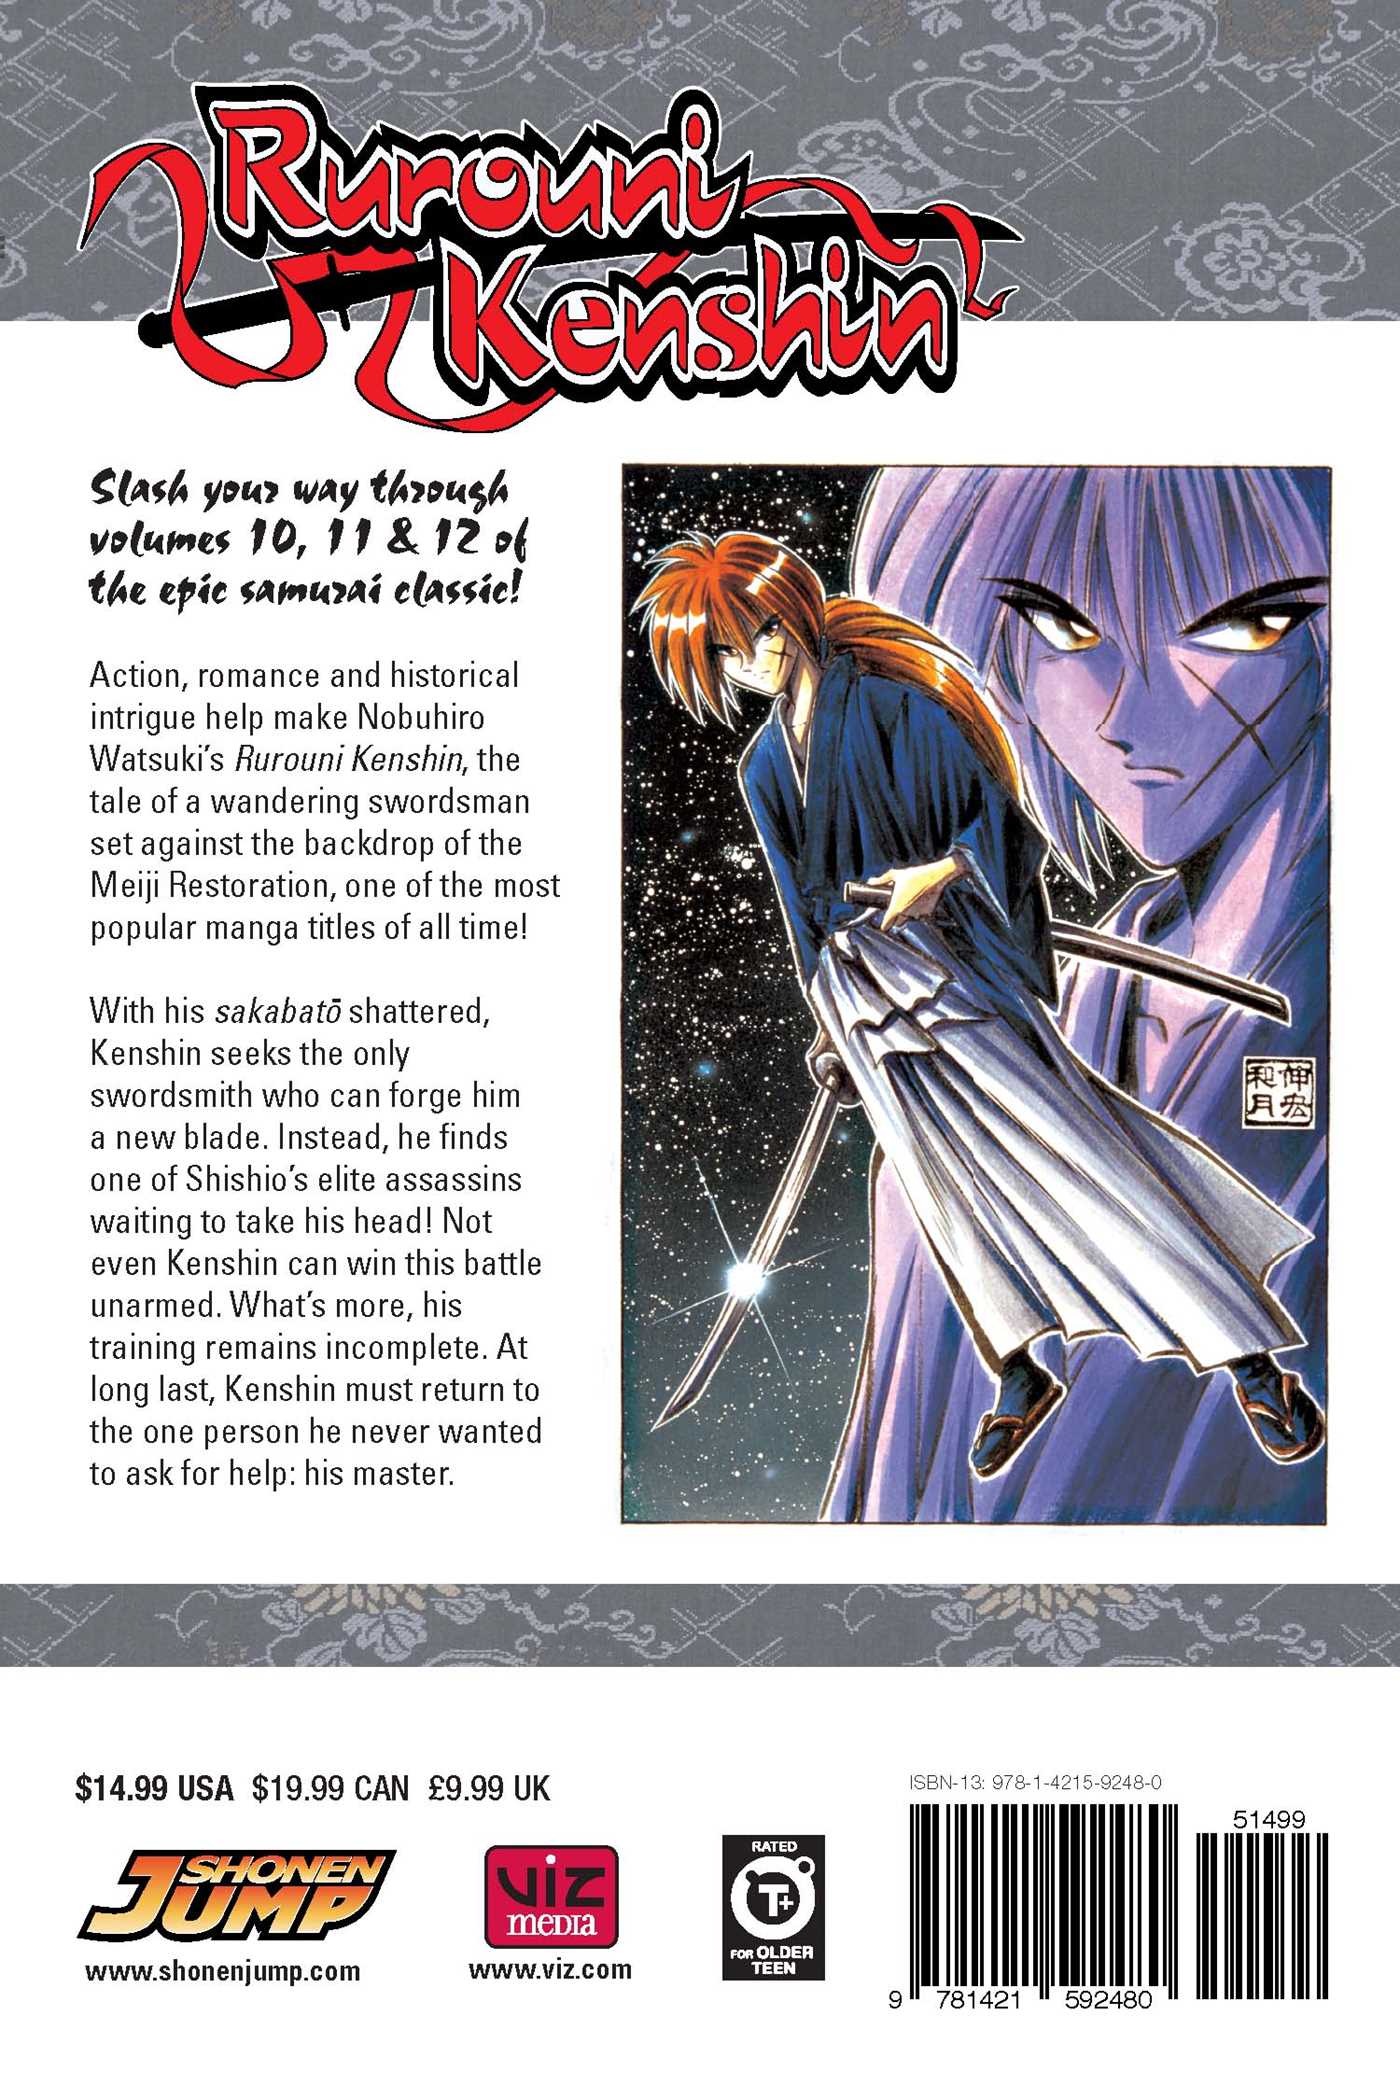 Rurouni Kenshin Manga Recommences After 18 Years!, Manga News